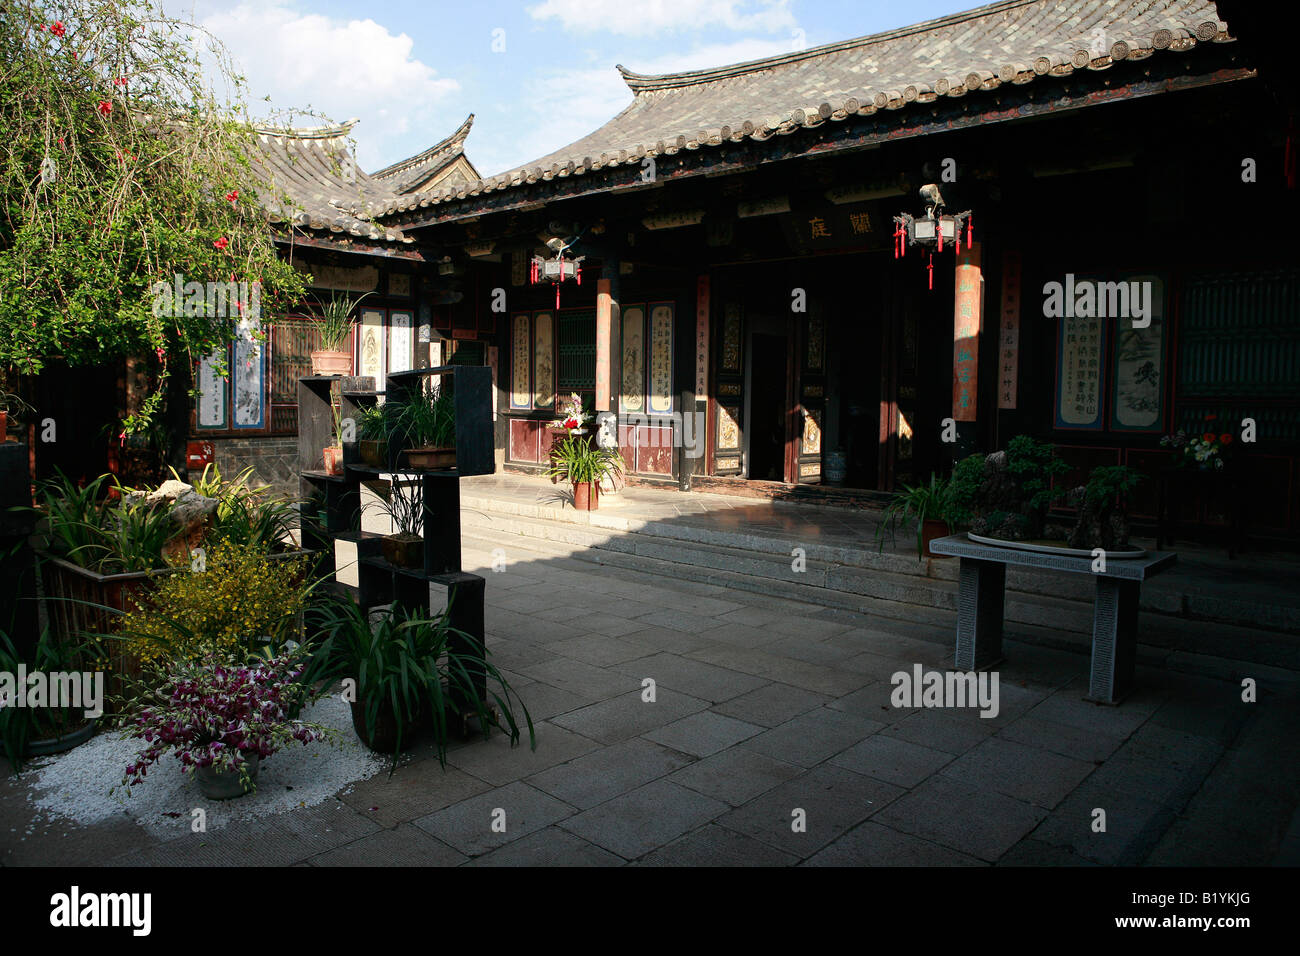 Zhu Family Garden Jianshui Yunnan China Stock Photo 18433144